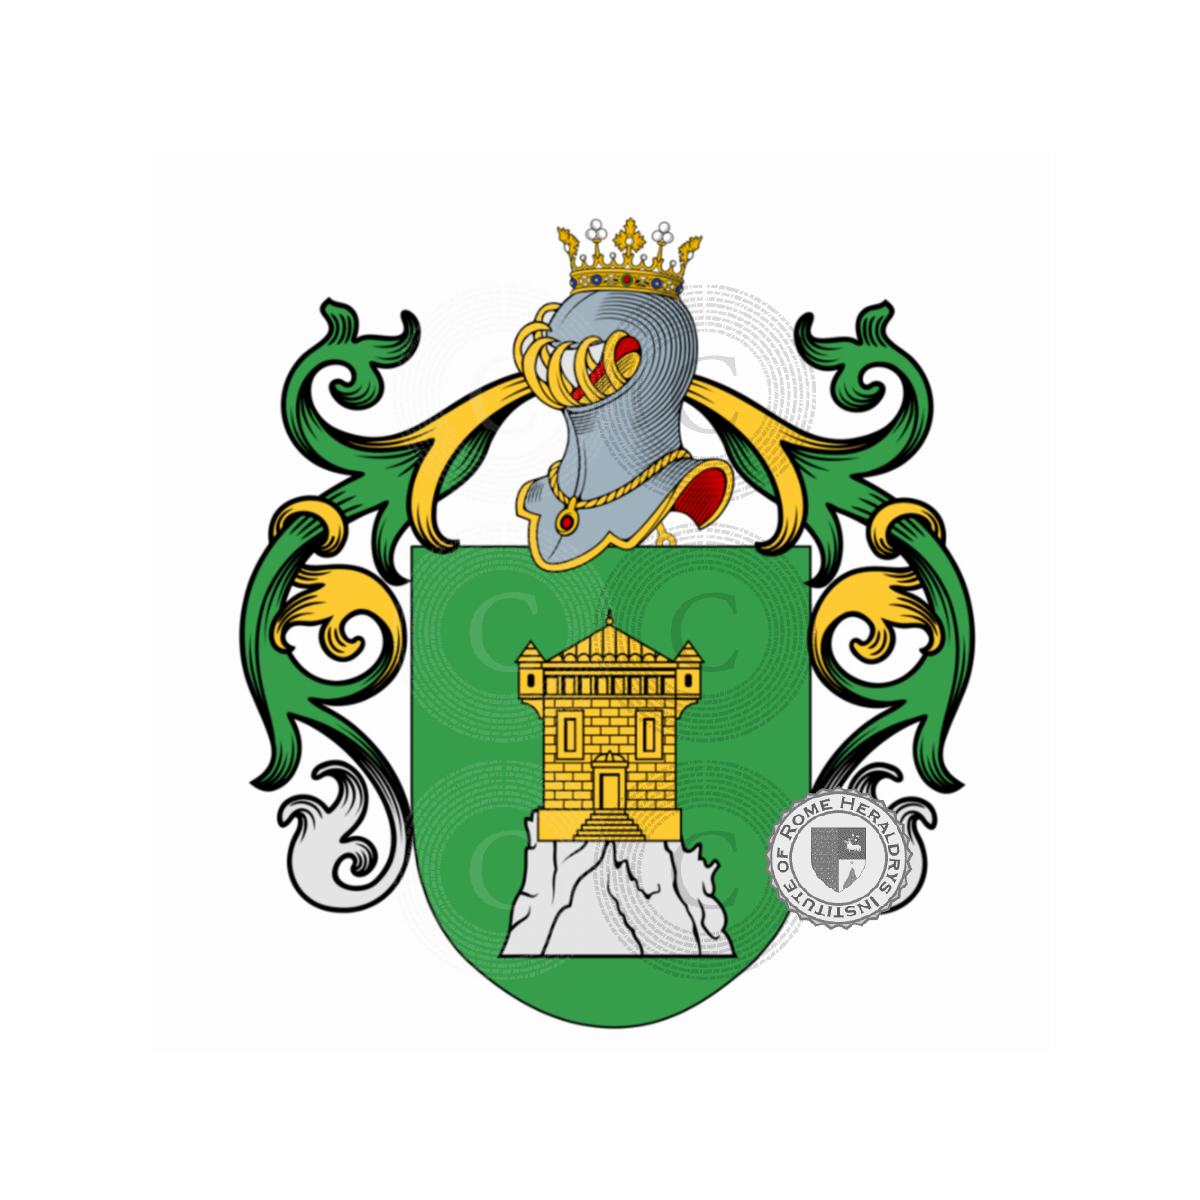 Wappen der FamiliePalacio, de Palacio,del Palacio